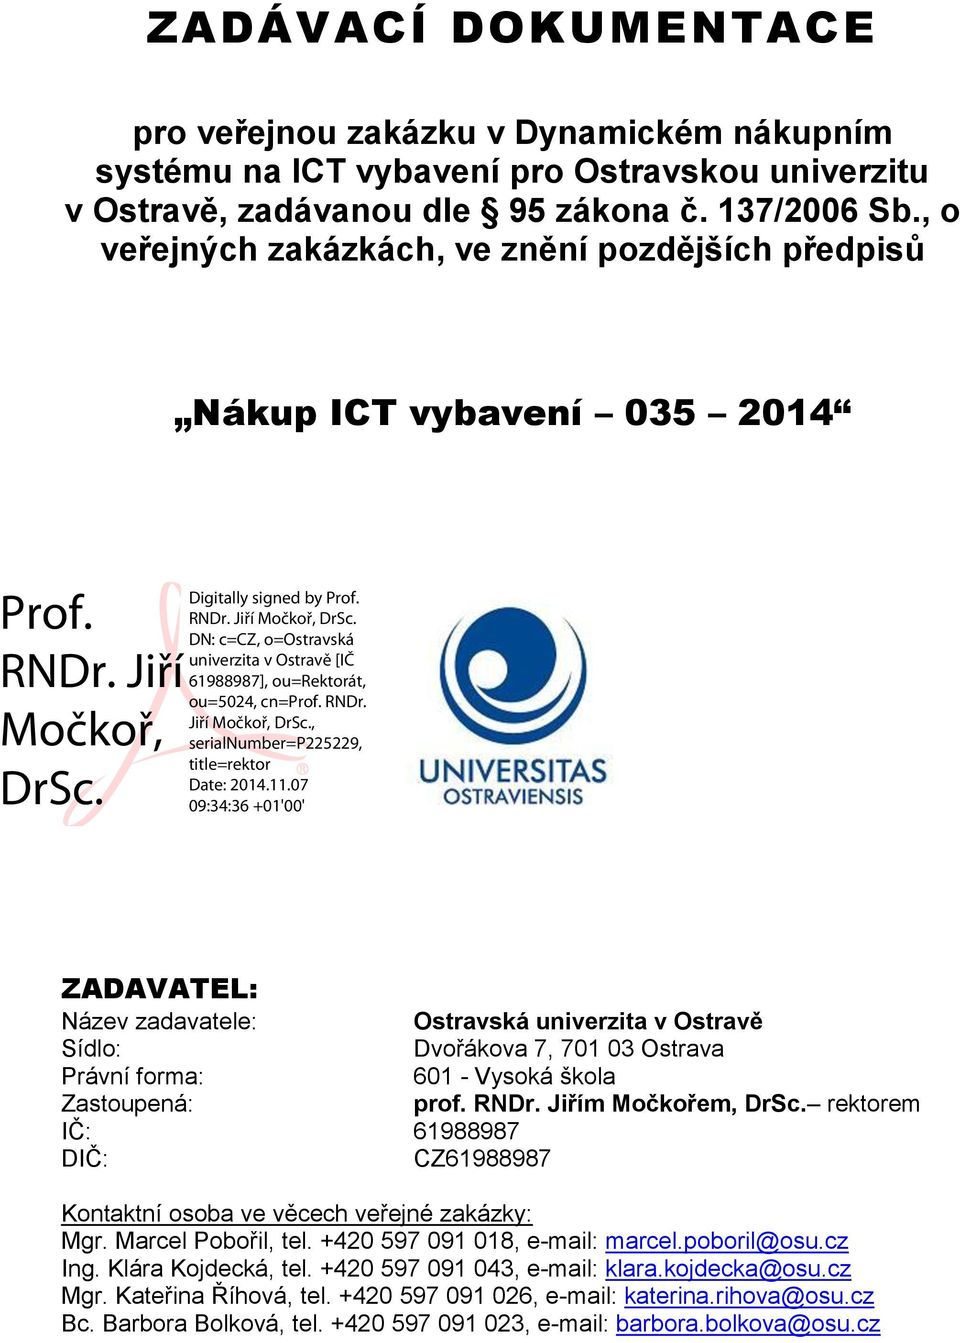 Digitally signed by Prof. RNDr. Jiří Močkoř, DrSc. DN: c=cz, o=ostravská univerzita v Ostravě [IČ 61988987], ou=rektorát, ou=5024, cn=prof. RNDr. Jiří Močkoř, DrSc., serialnumber=p225229, title=rektor Date: 2014.